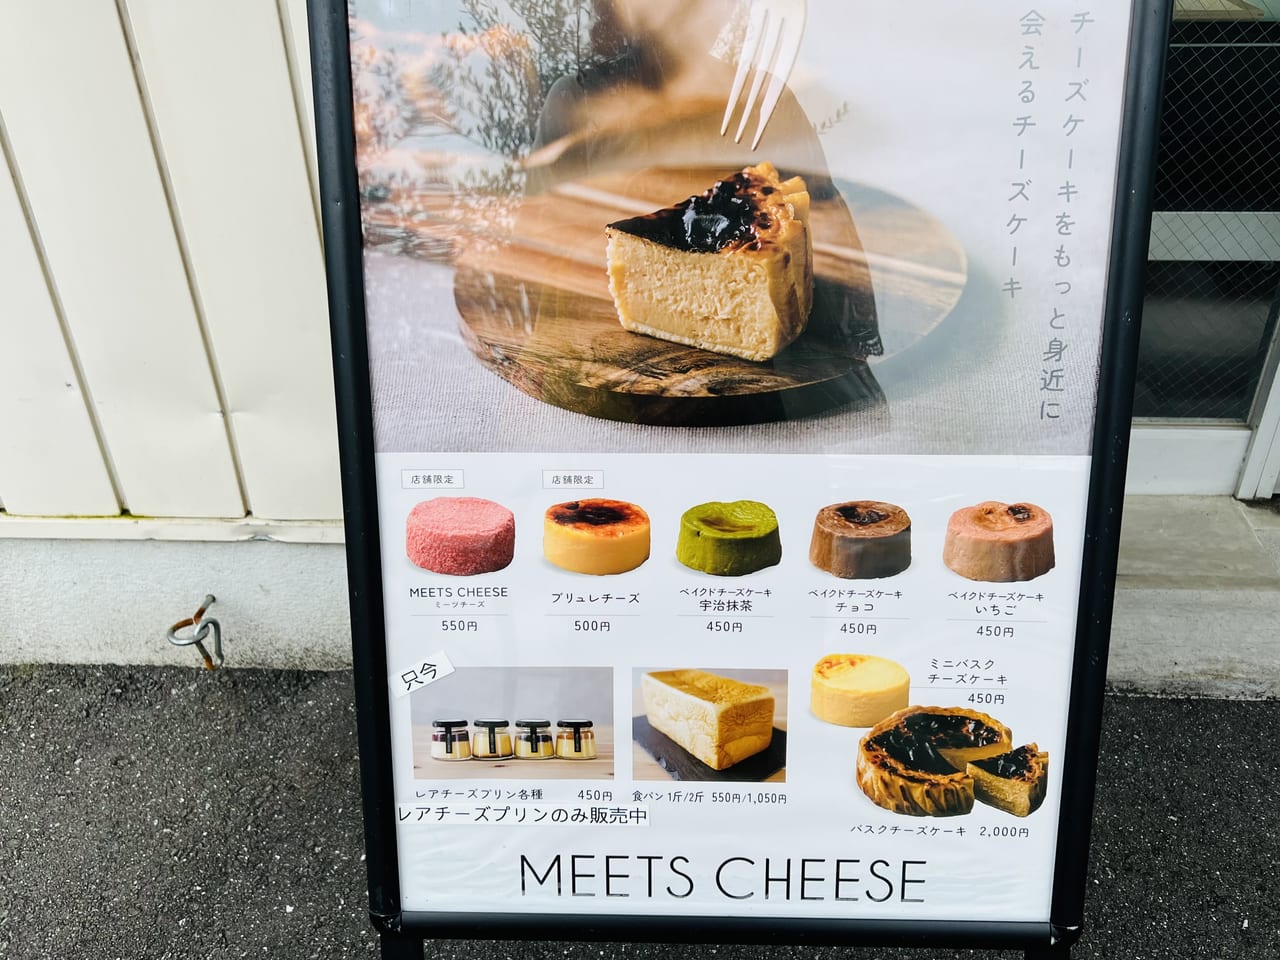 高知市南久保にオープンしたチーズケーキ専門店「MEETS CHEESE」のメニューの立て看板